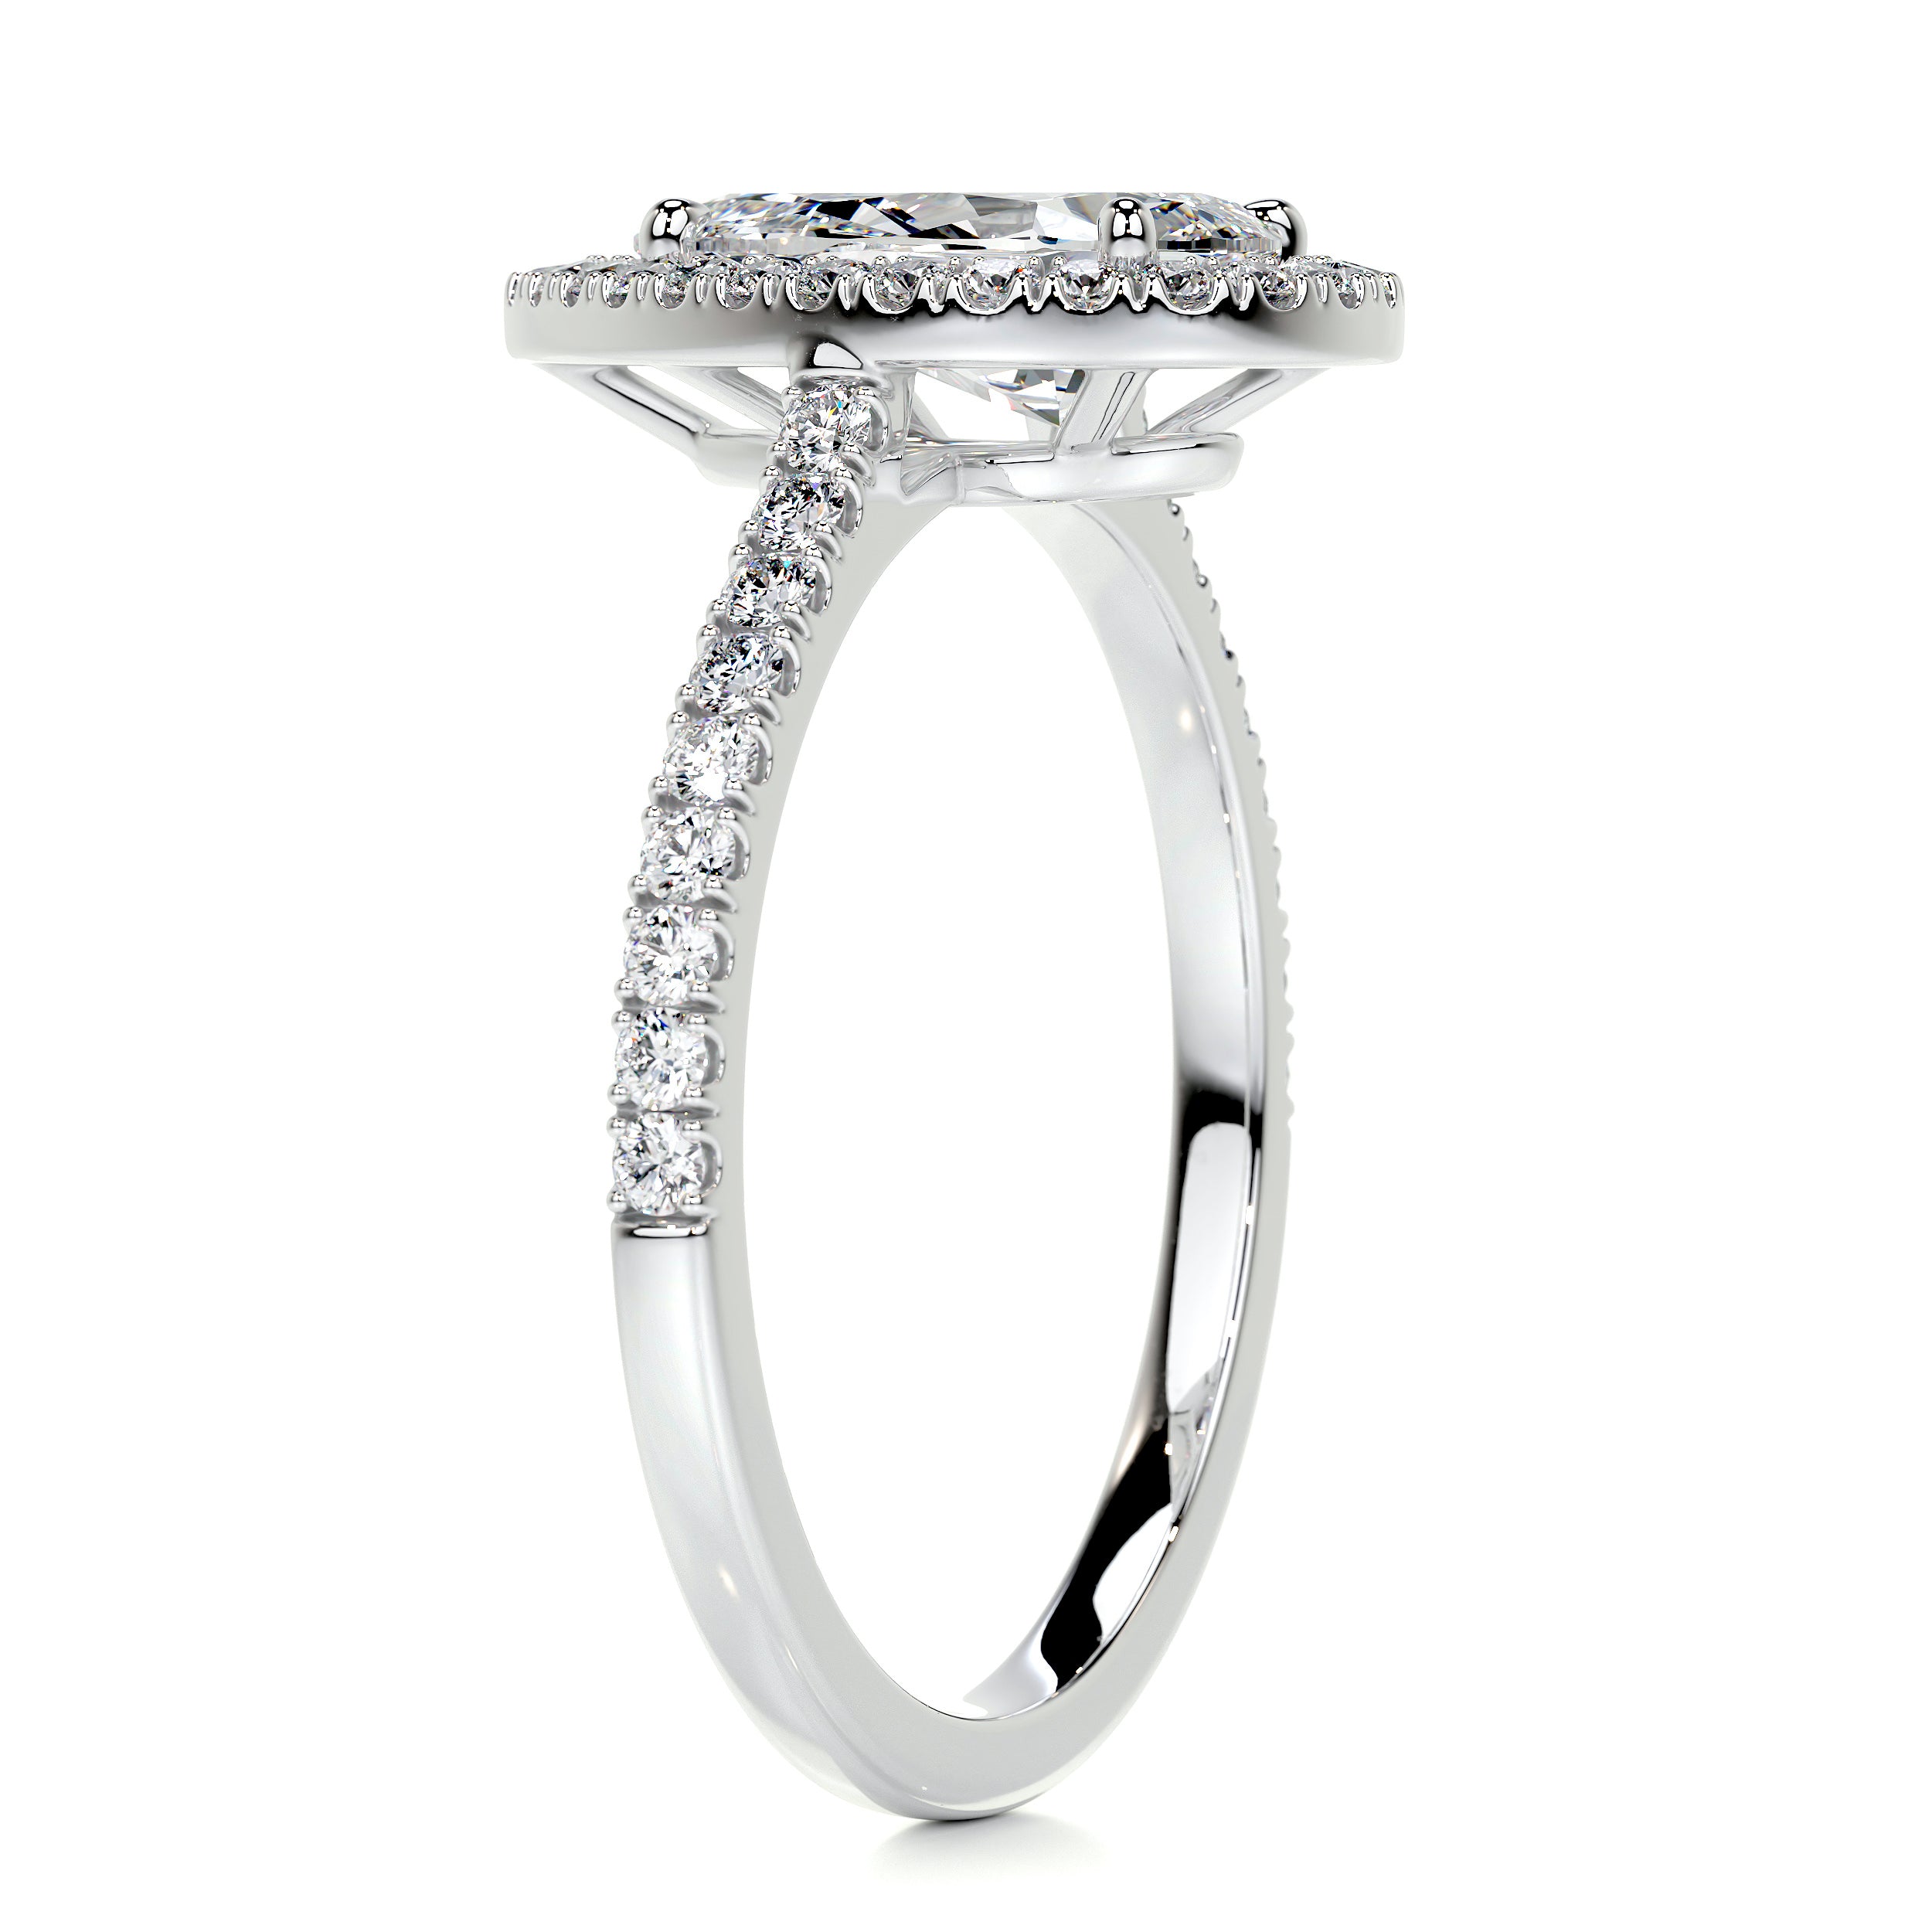 Sophia Diamond Engagement Ring   (2 Carat) -Platinum